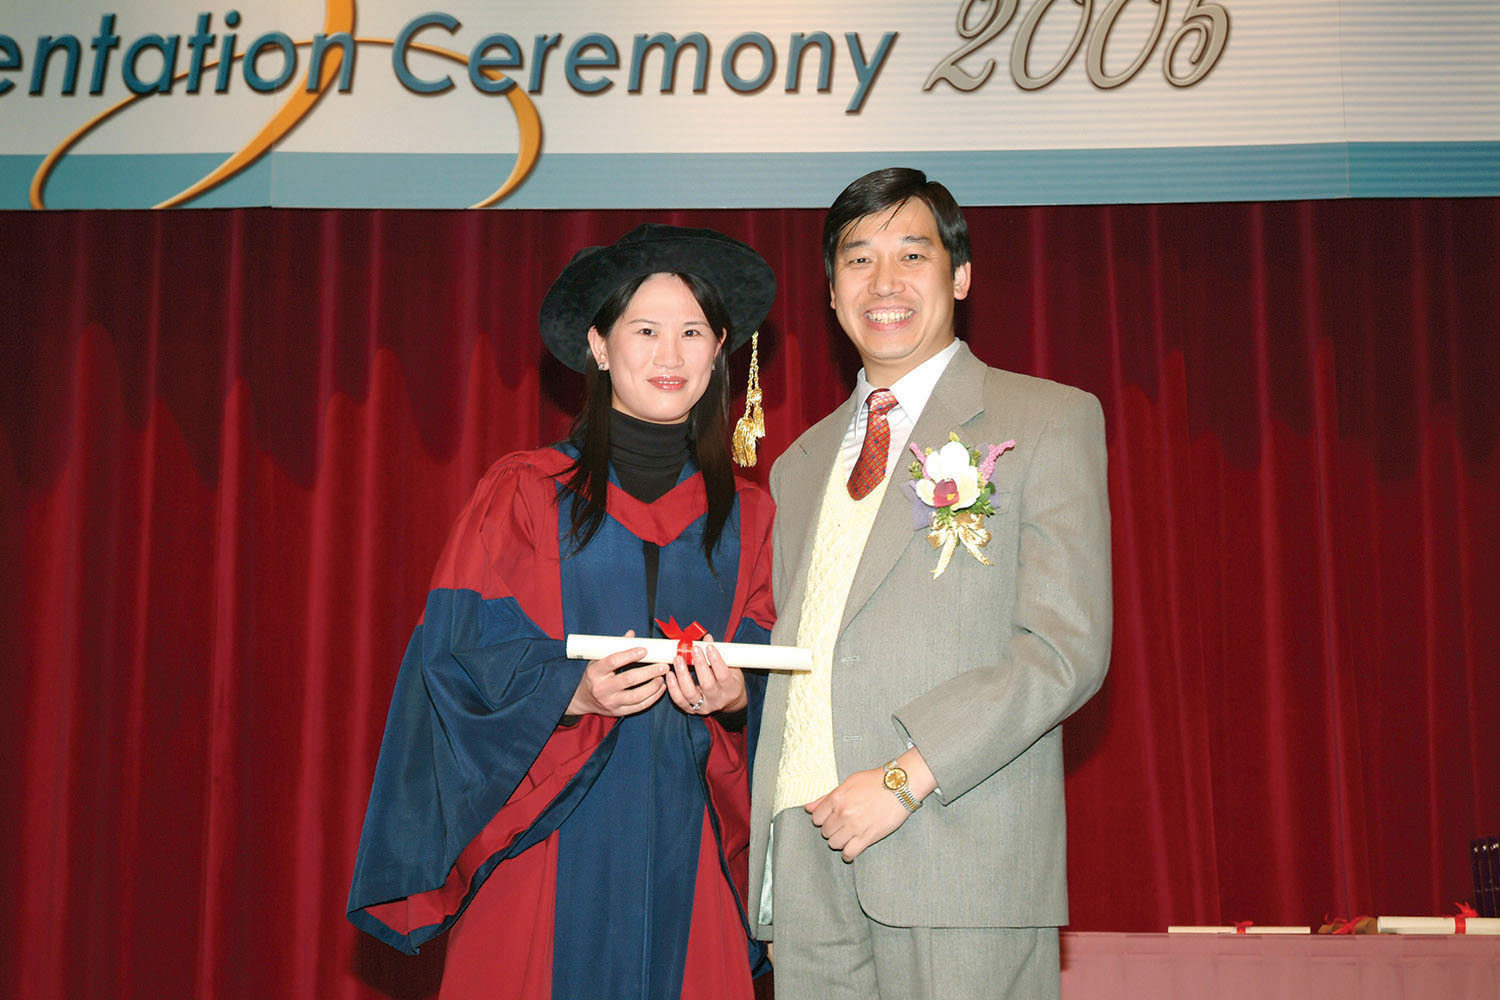 Professor May Wong